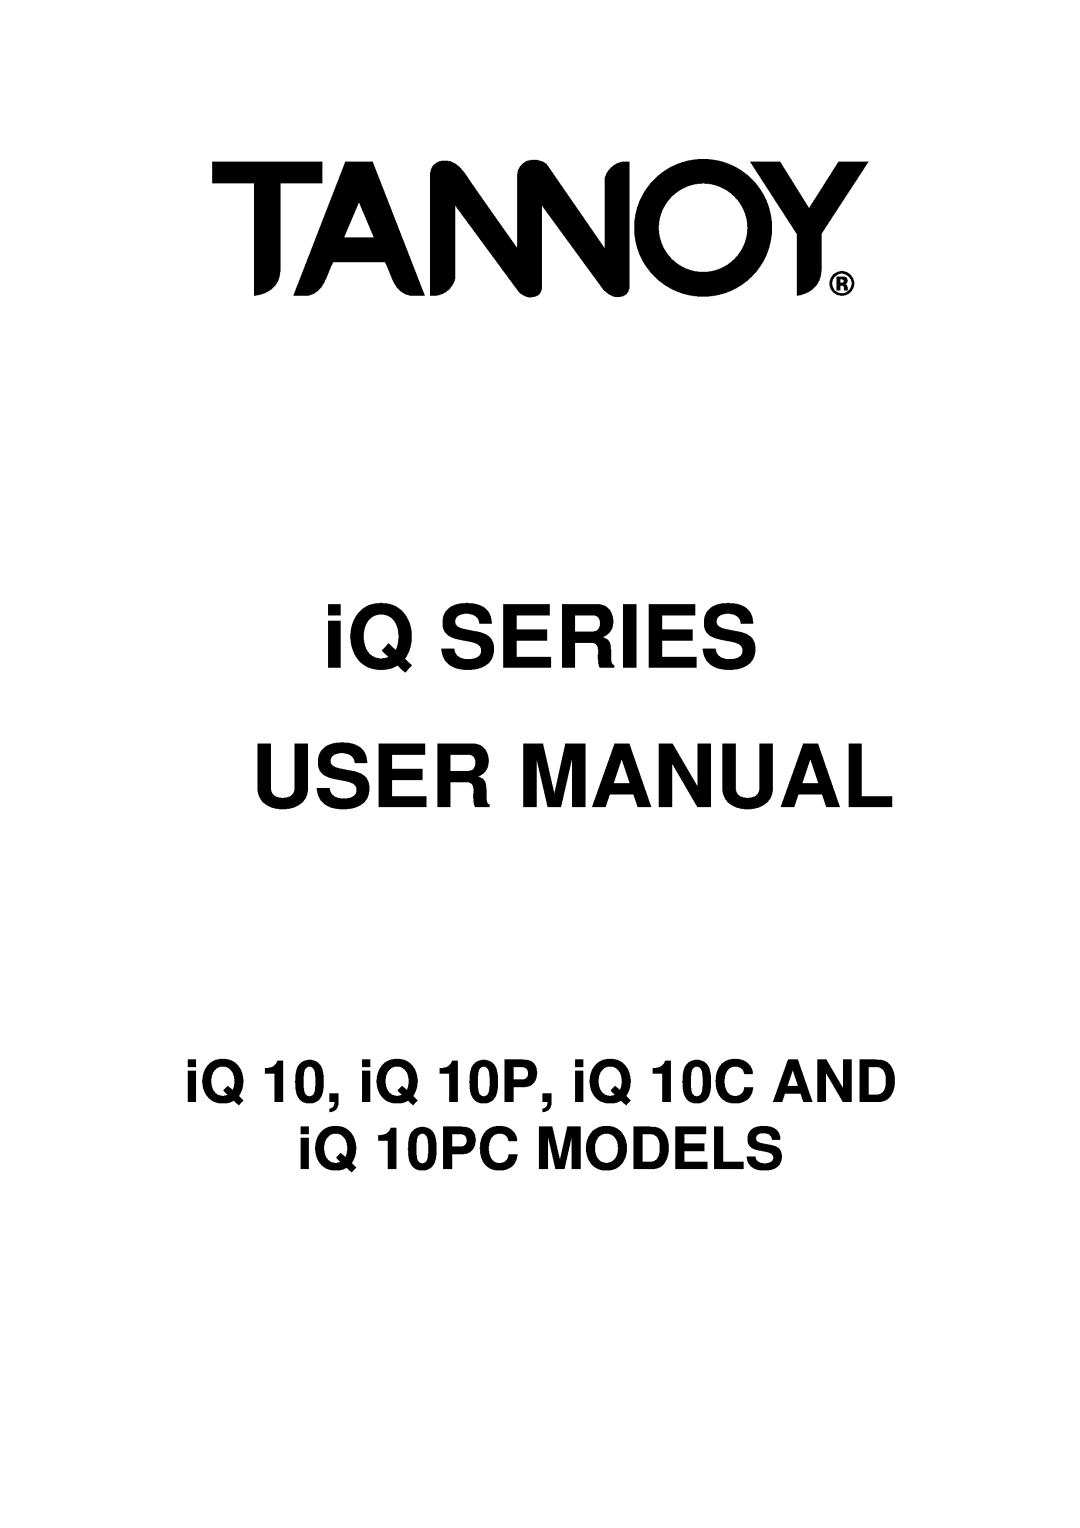 3Com user manual iQ SERIES USER MANUAL, iQ 10, iQ 10P, iQ 10C AND iQ 10PC MODELS 